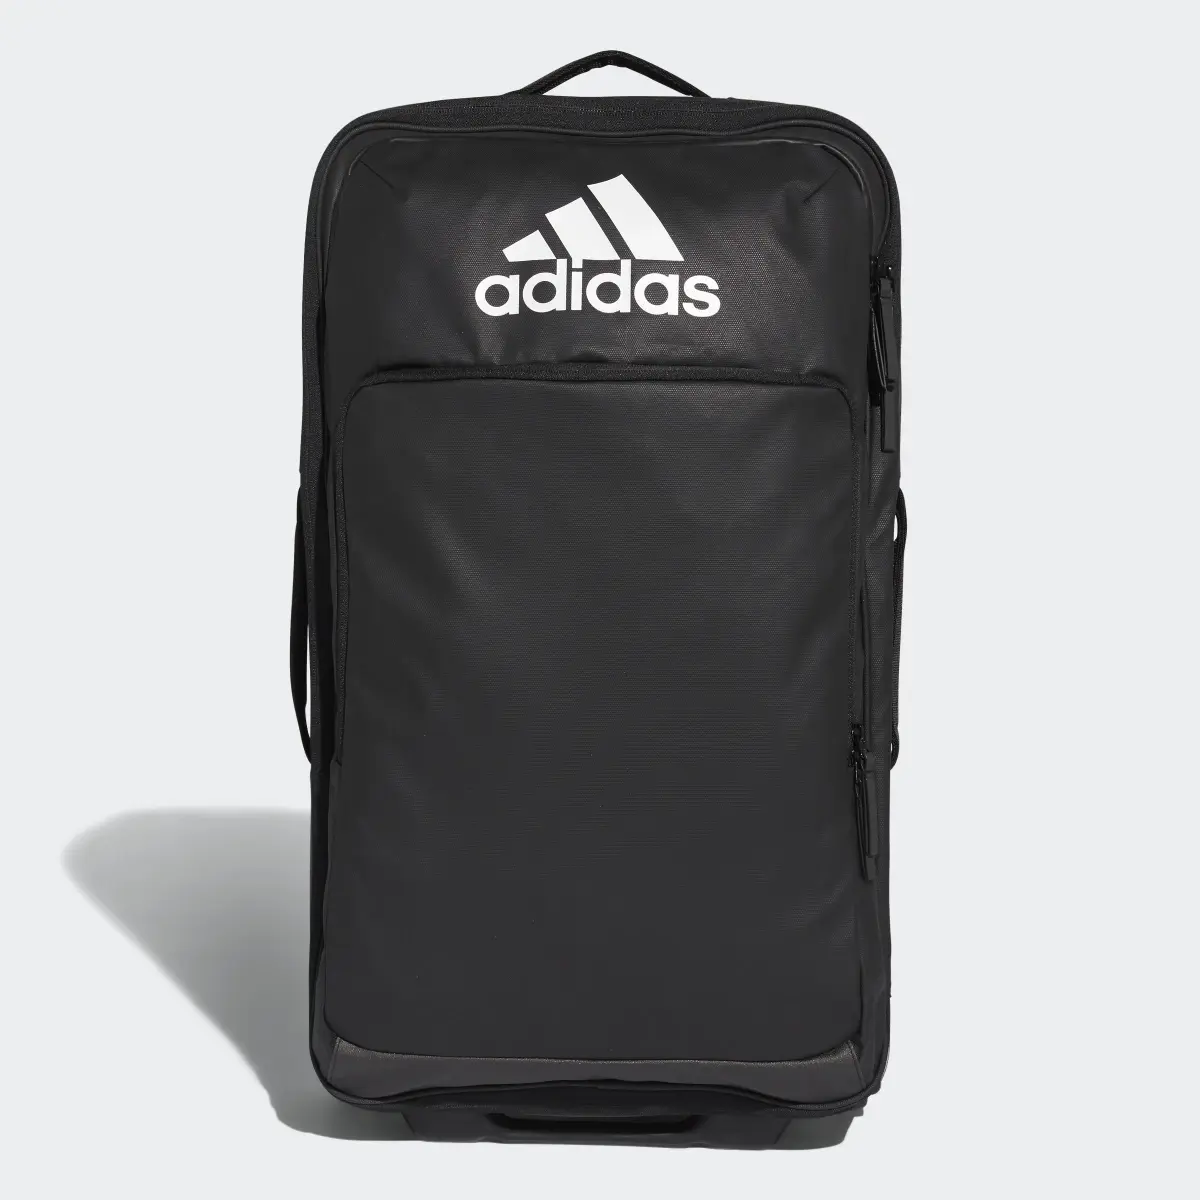 Adidas Trolley Bag Medium. 1